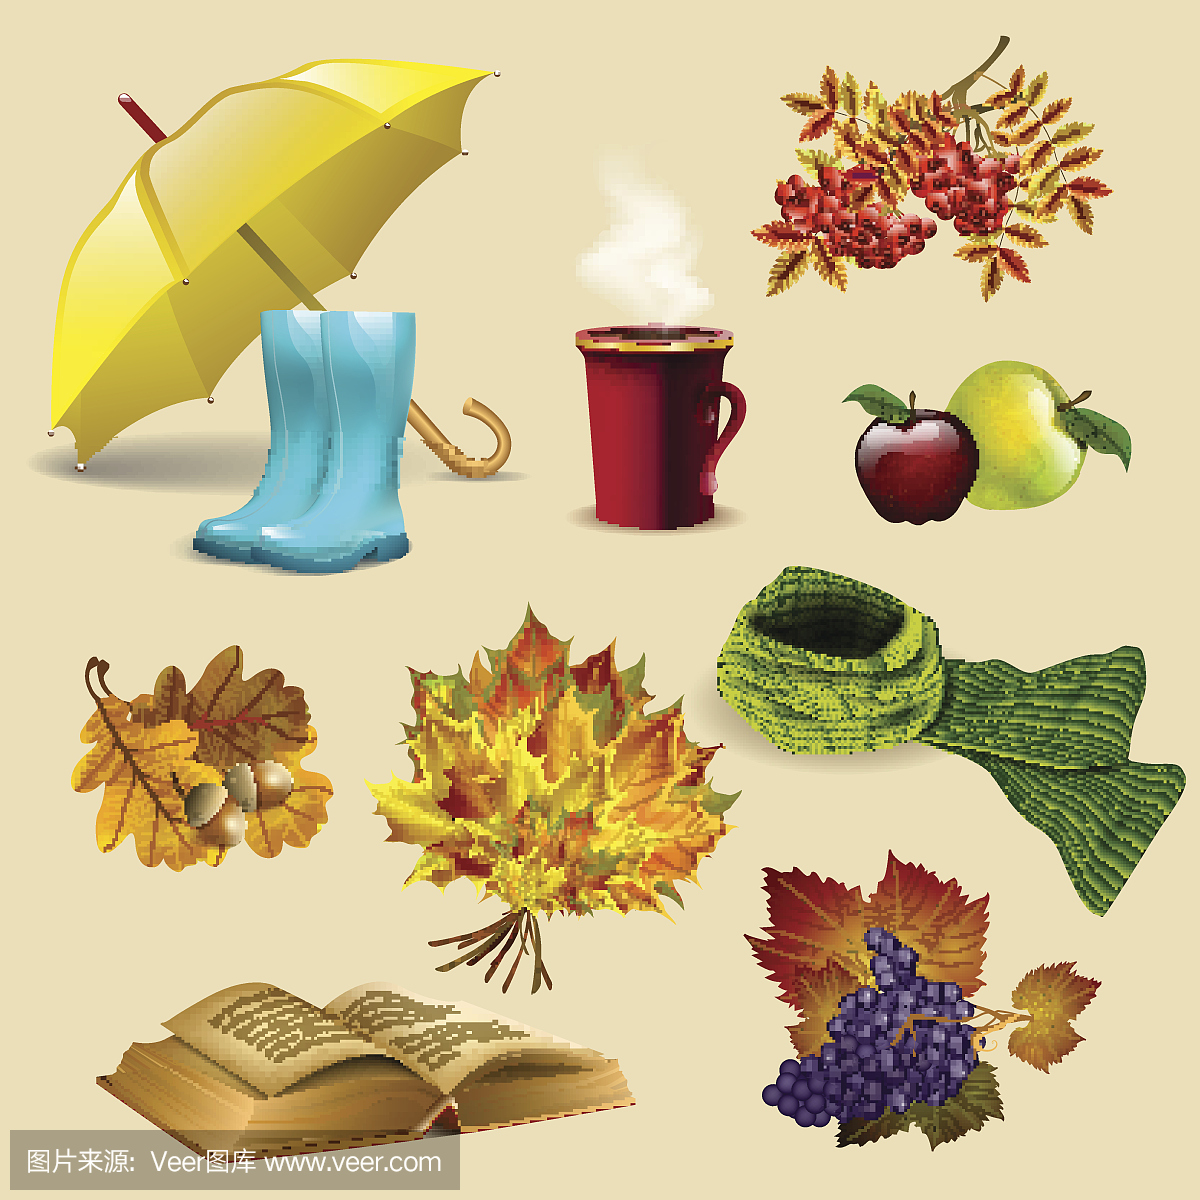 一套秋天的元素和物体,叶子,水果,雨伞,靴子